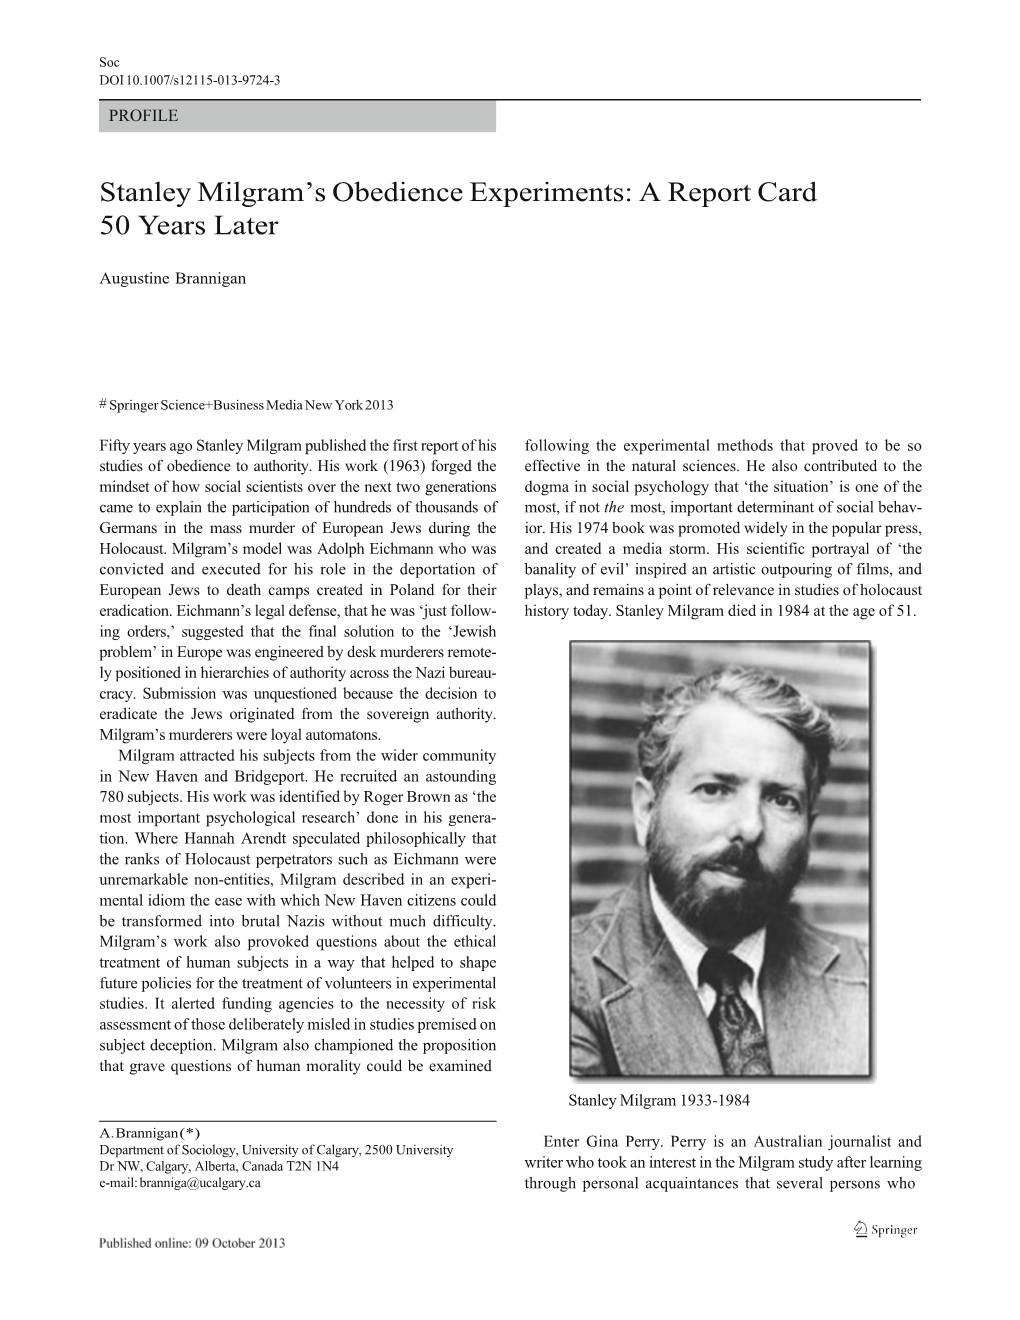 Stanley Milgram's Obedience Experiments